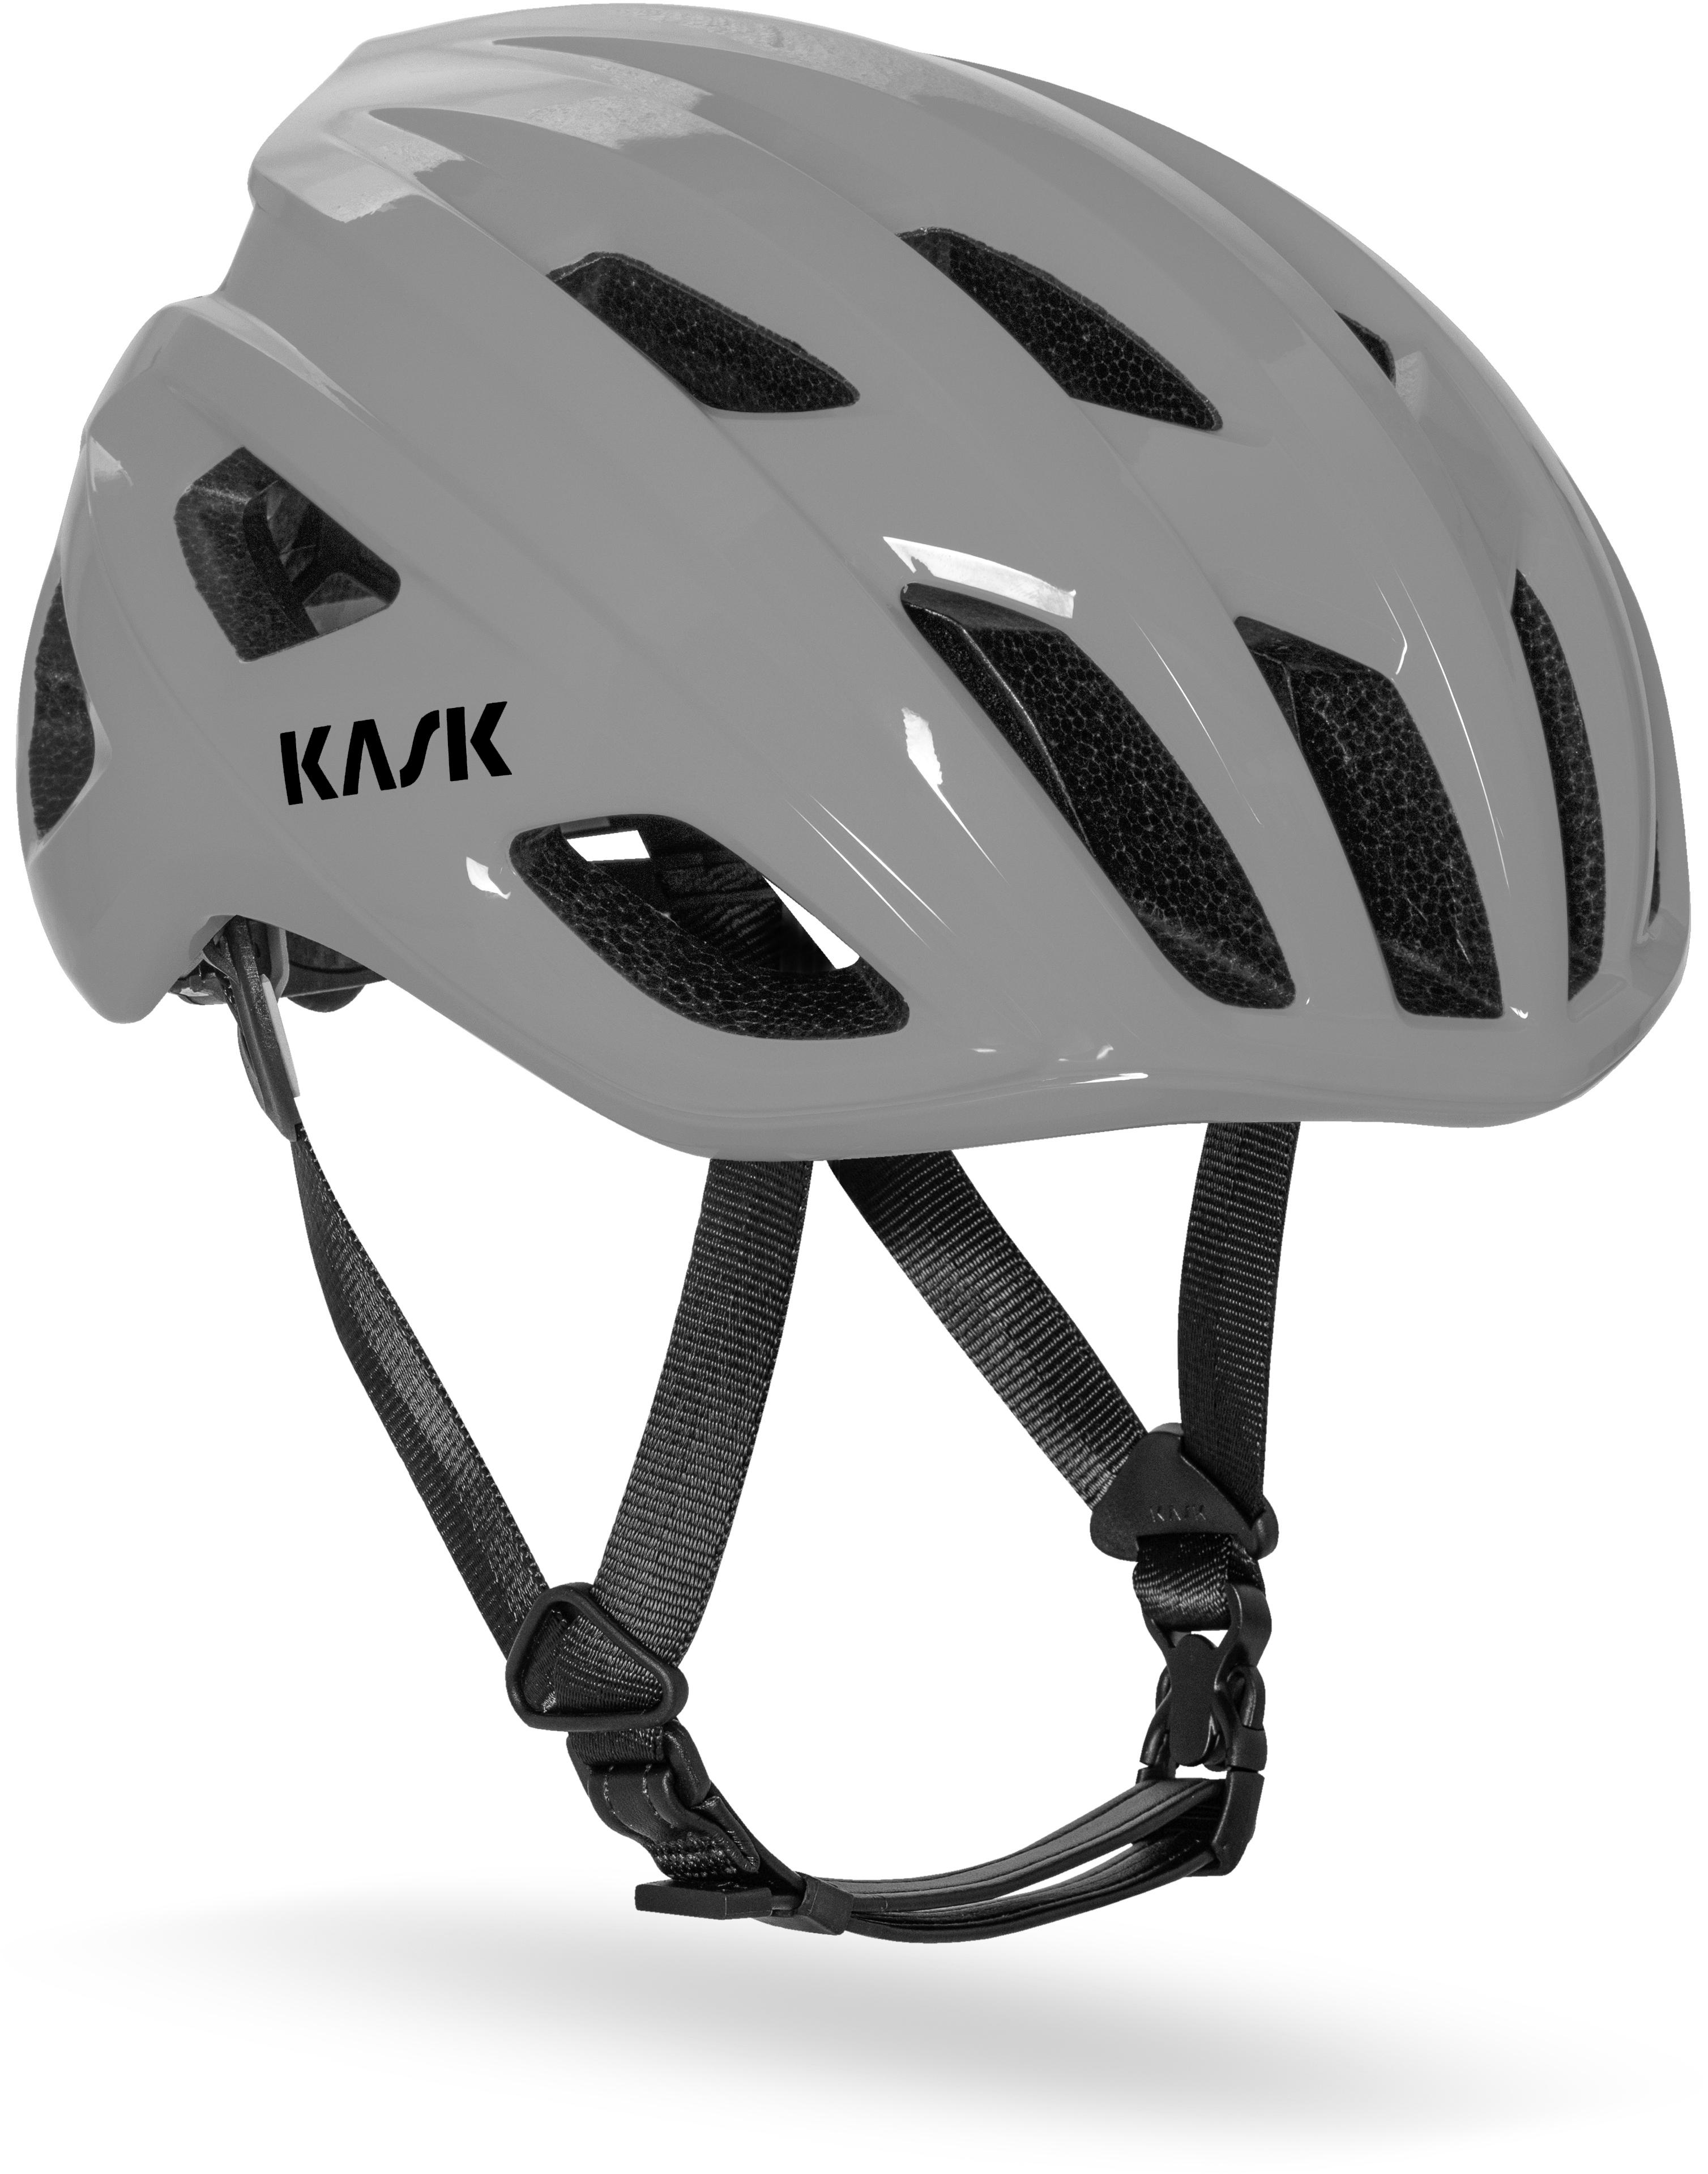 Kask Mojito Wg11 Road Helmet Grey, Large